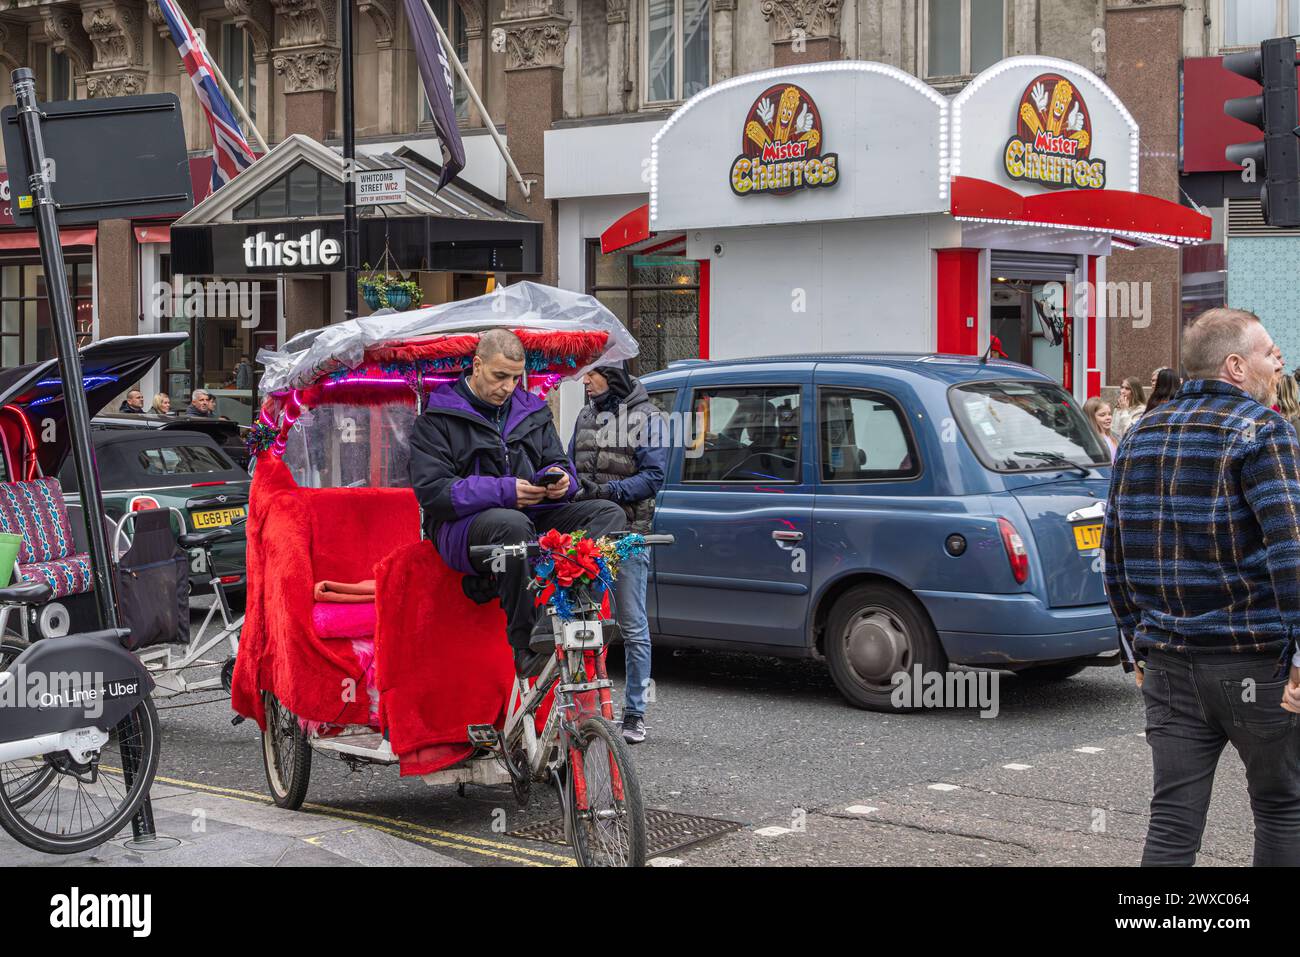 Un pédicab ou un pousse-pousse regarde son téléphone en attendant son prochain client. Le Pedicabs London Bill réglementera les tarifs et améliorera la sécurité. Banque D'Images